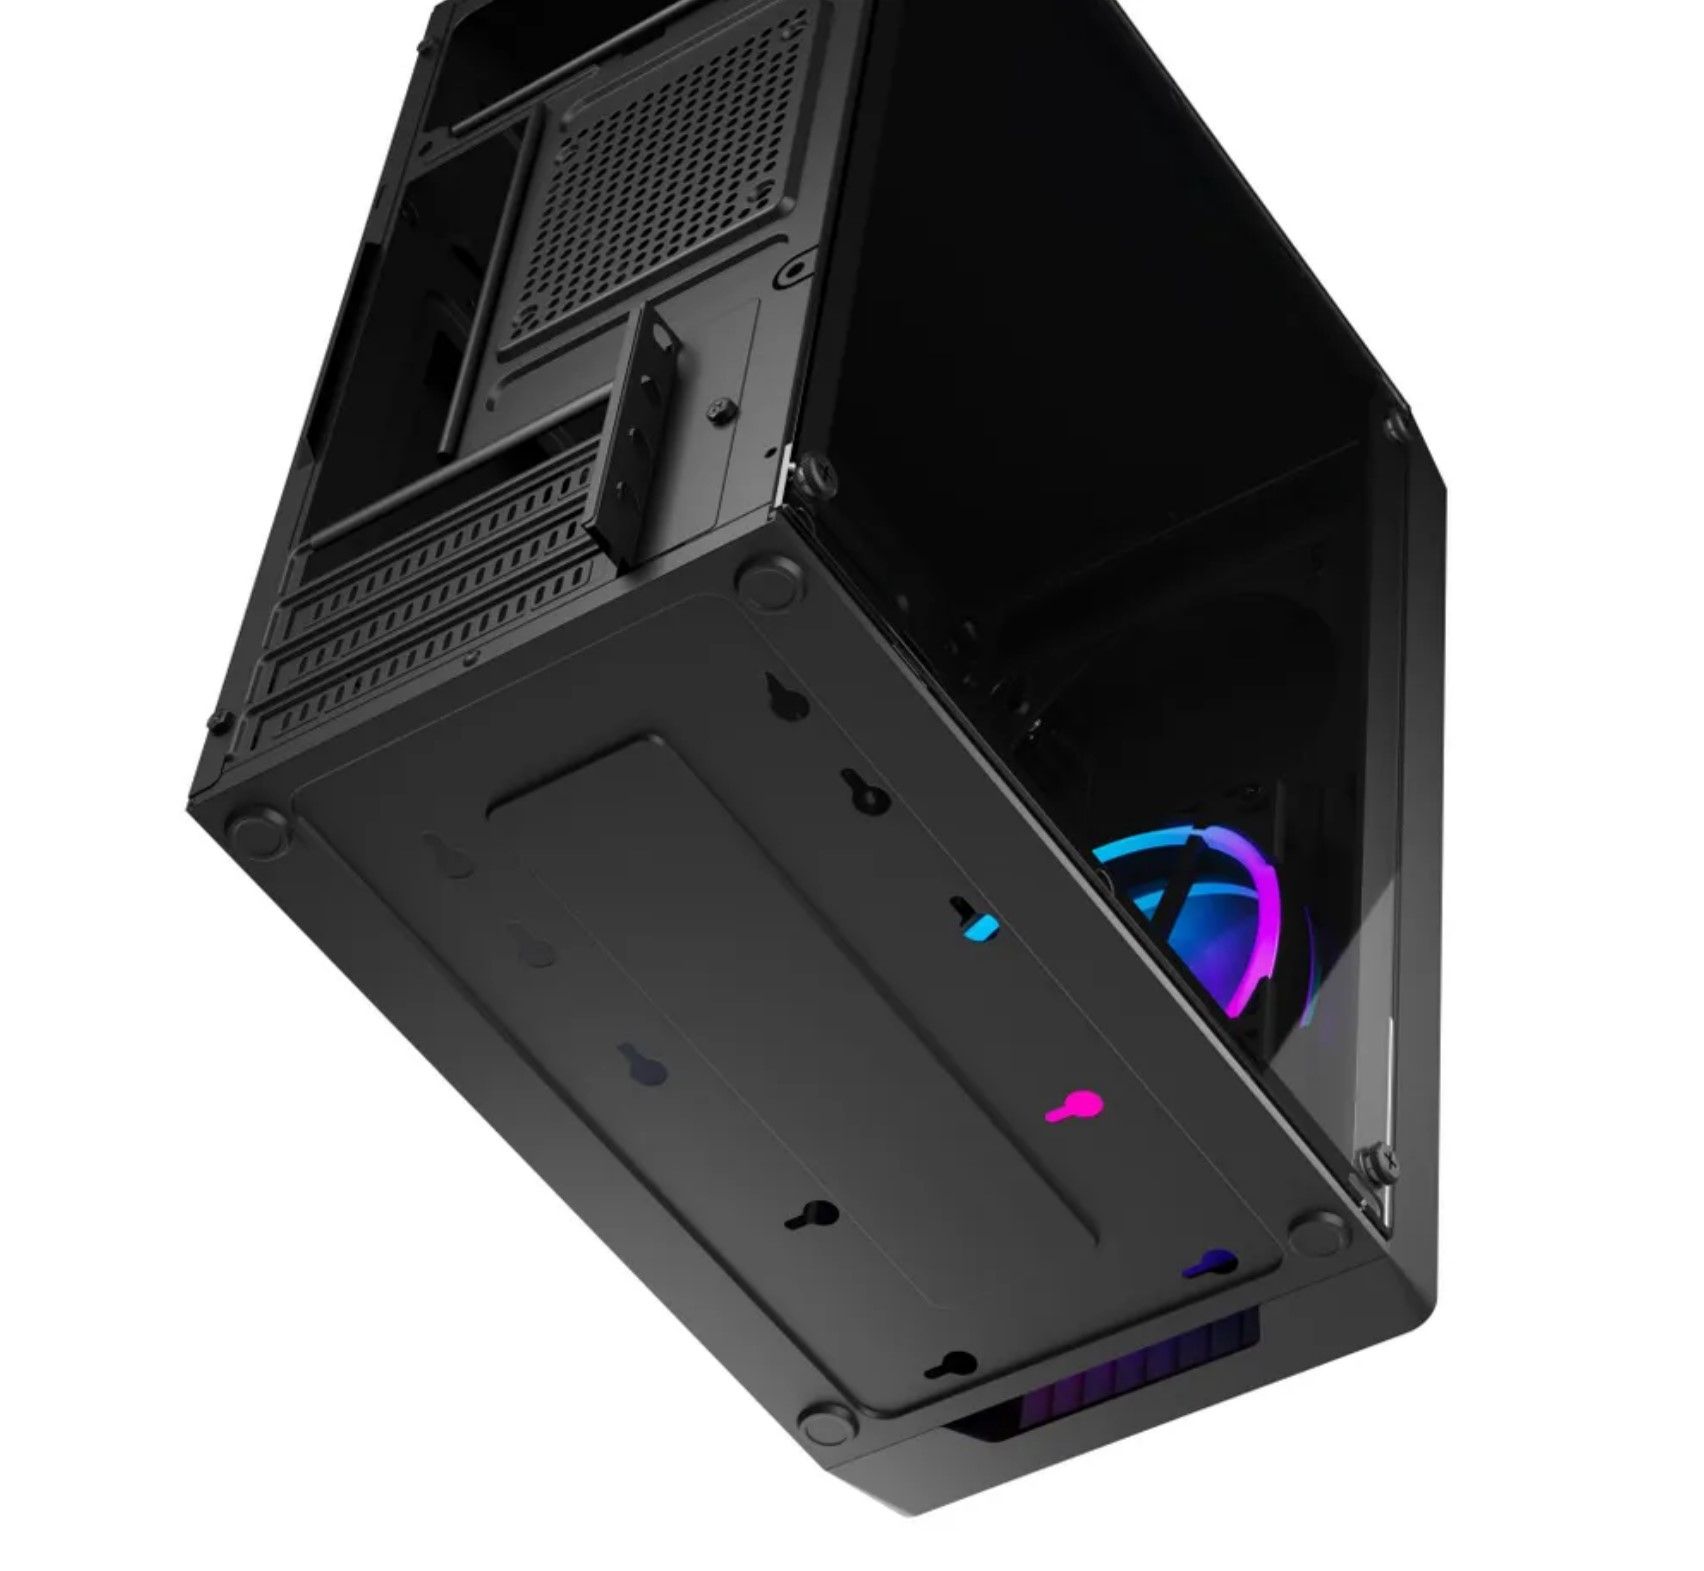 Корпус компьютерный Prime Box К720 (2 - USB 2.0) + 1 FRGB вентилятор + закаленное стекло